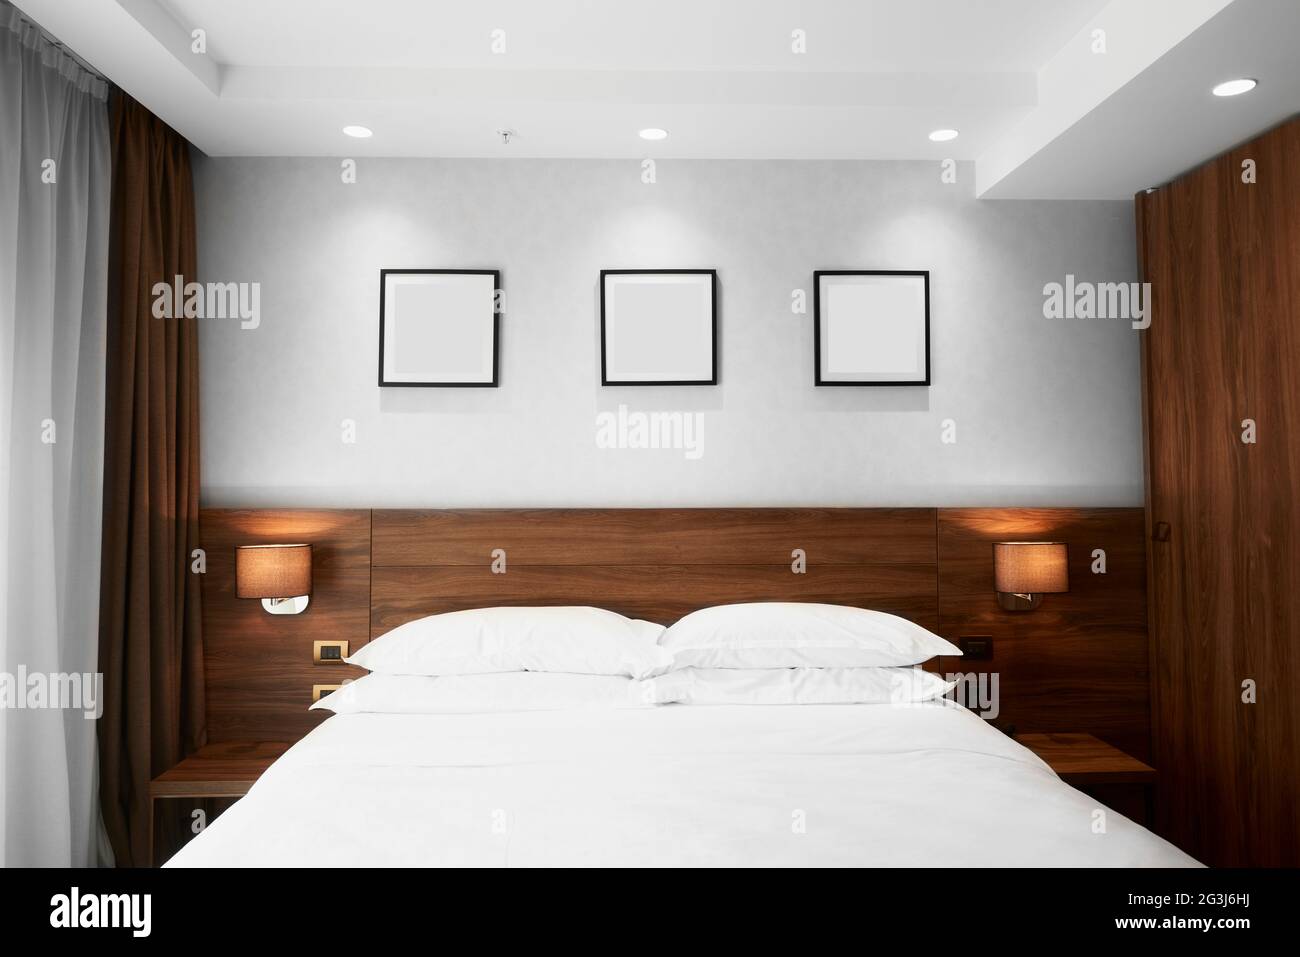 Lussuosa camera da letto con letto king size e tre immagini bianche sulla parete Foto Stock